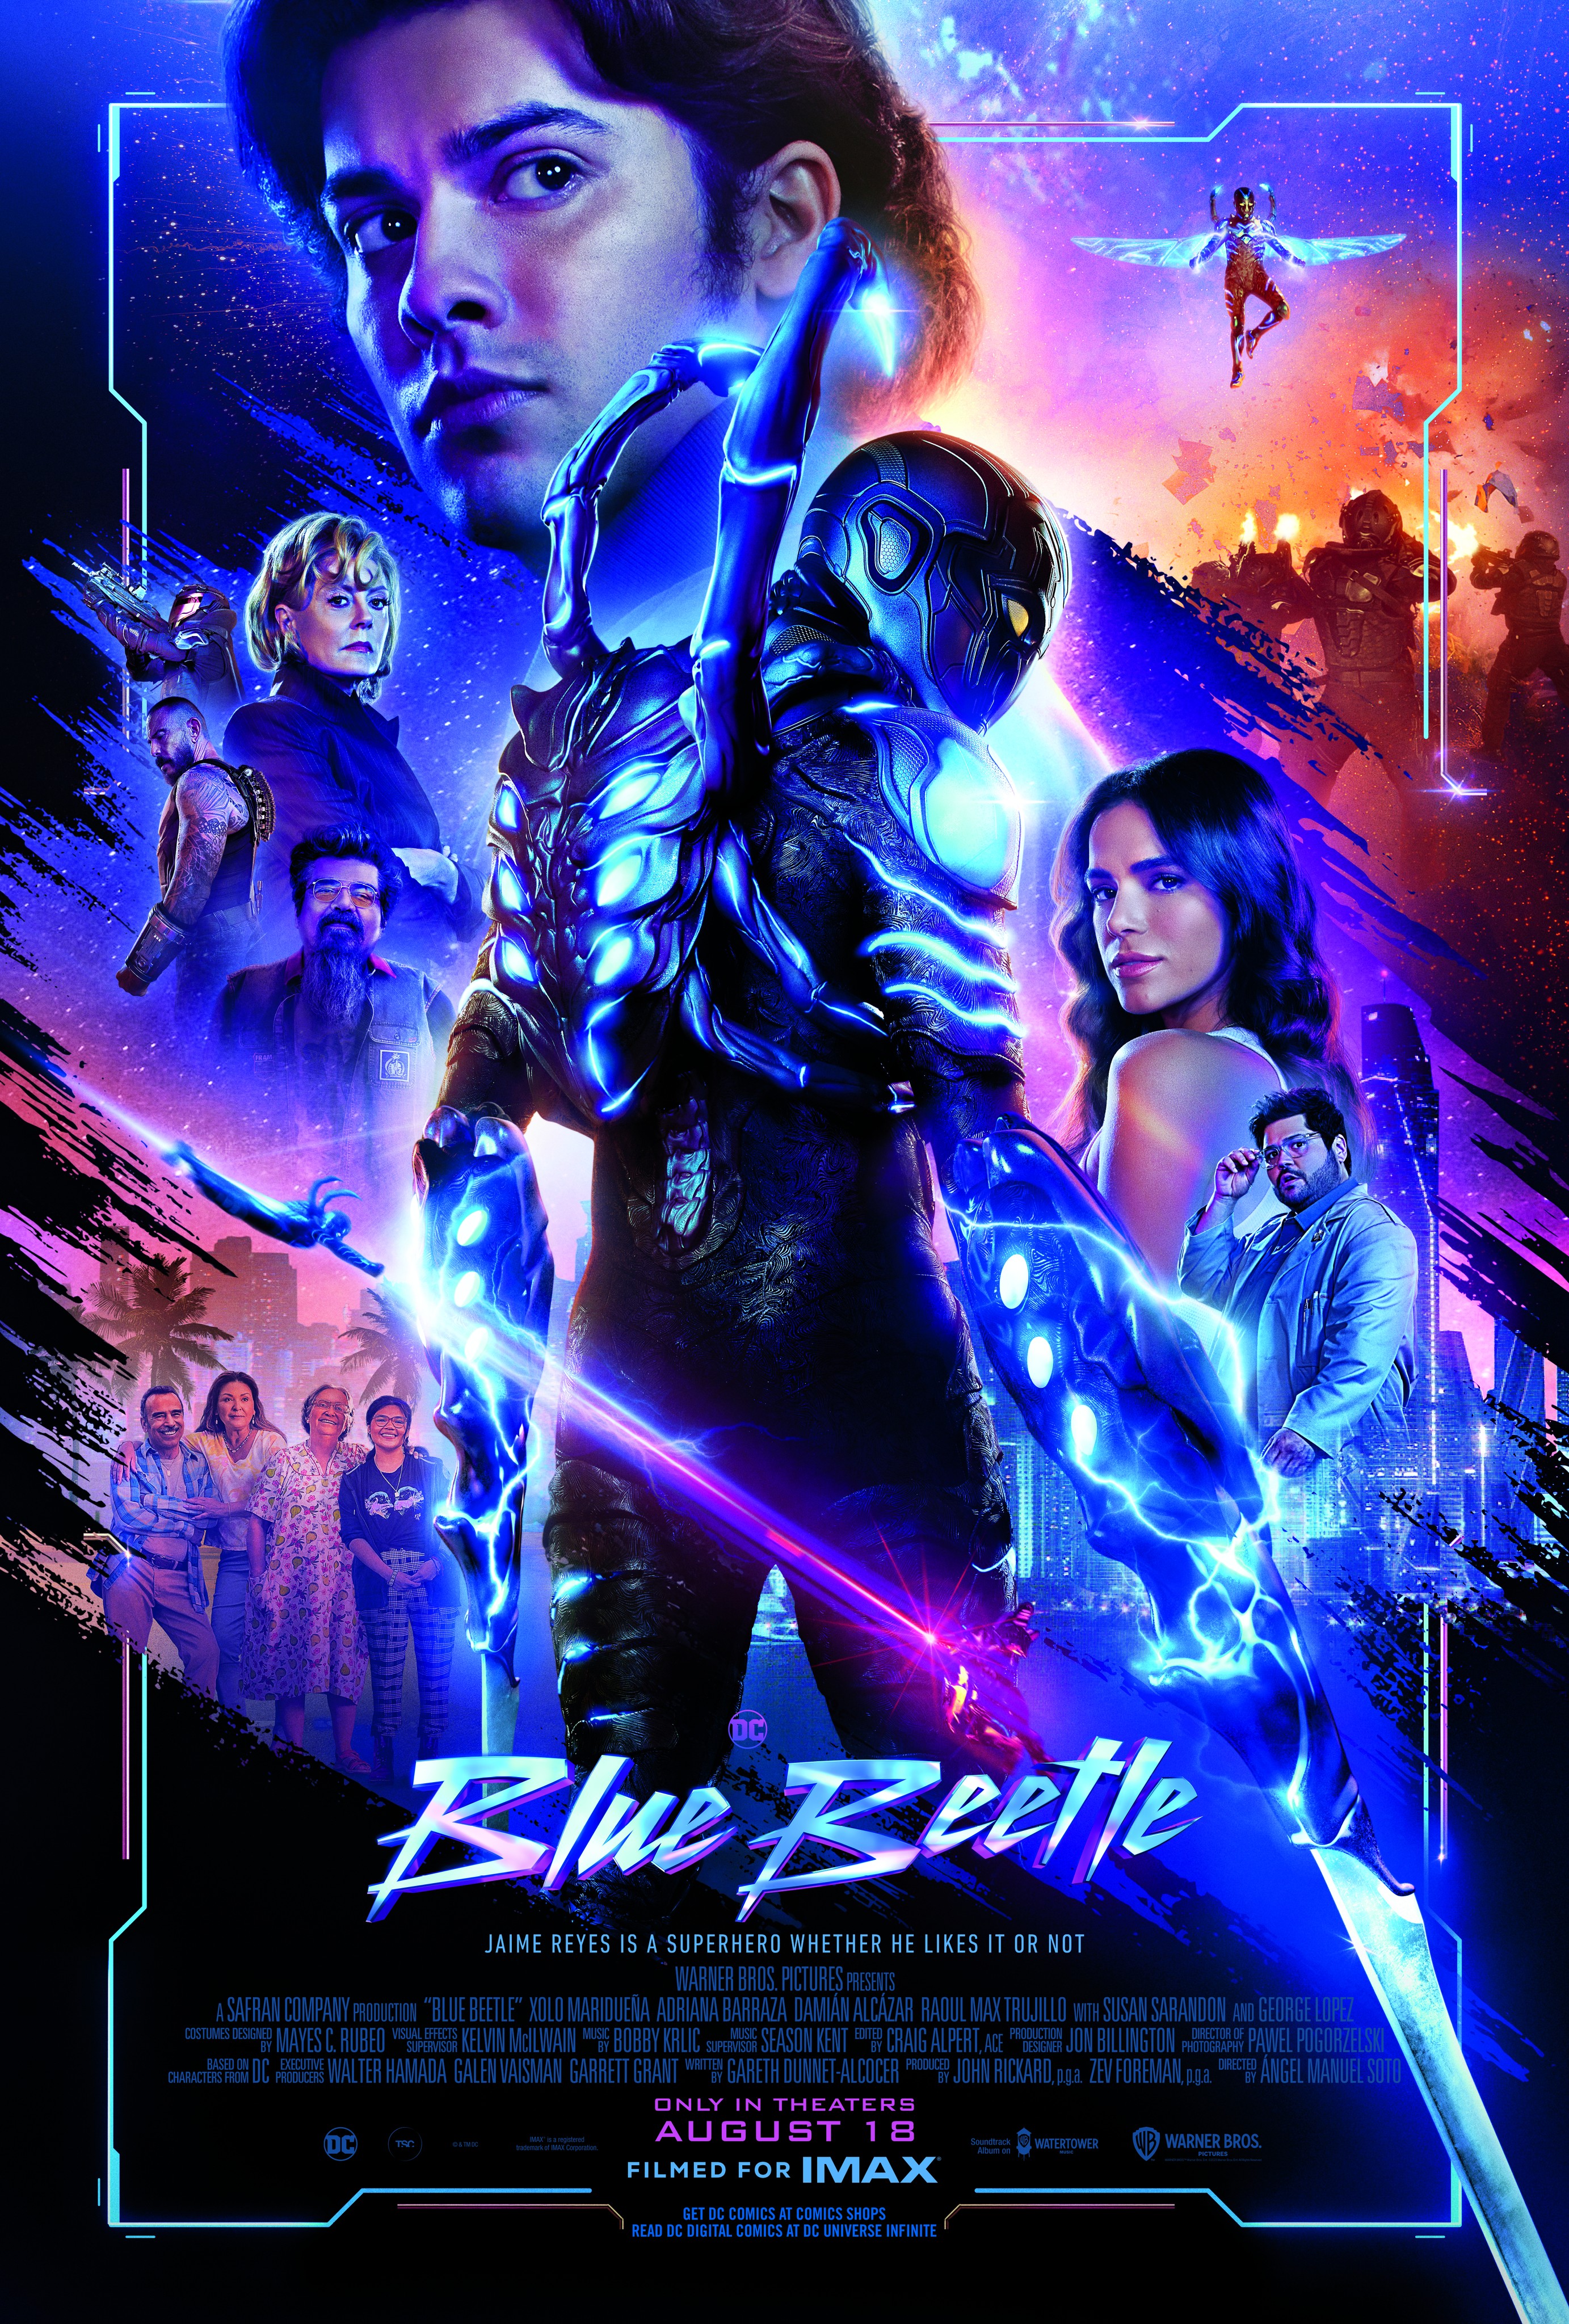 Blue Beetle Rotten Tomatoes Score Is DC's Best Since 2021